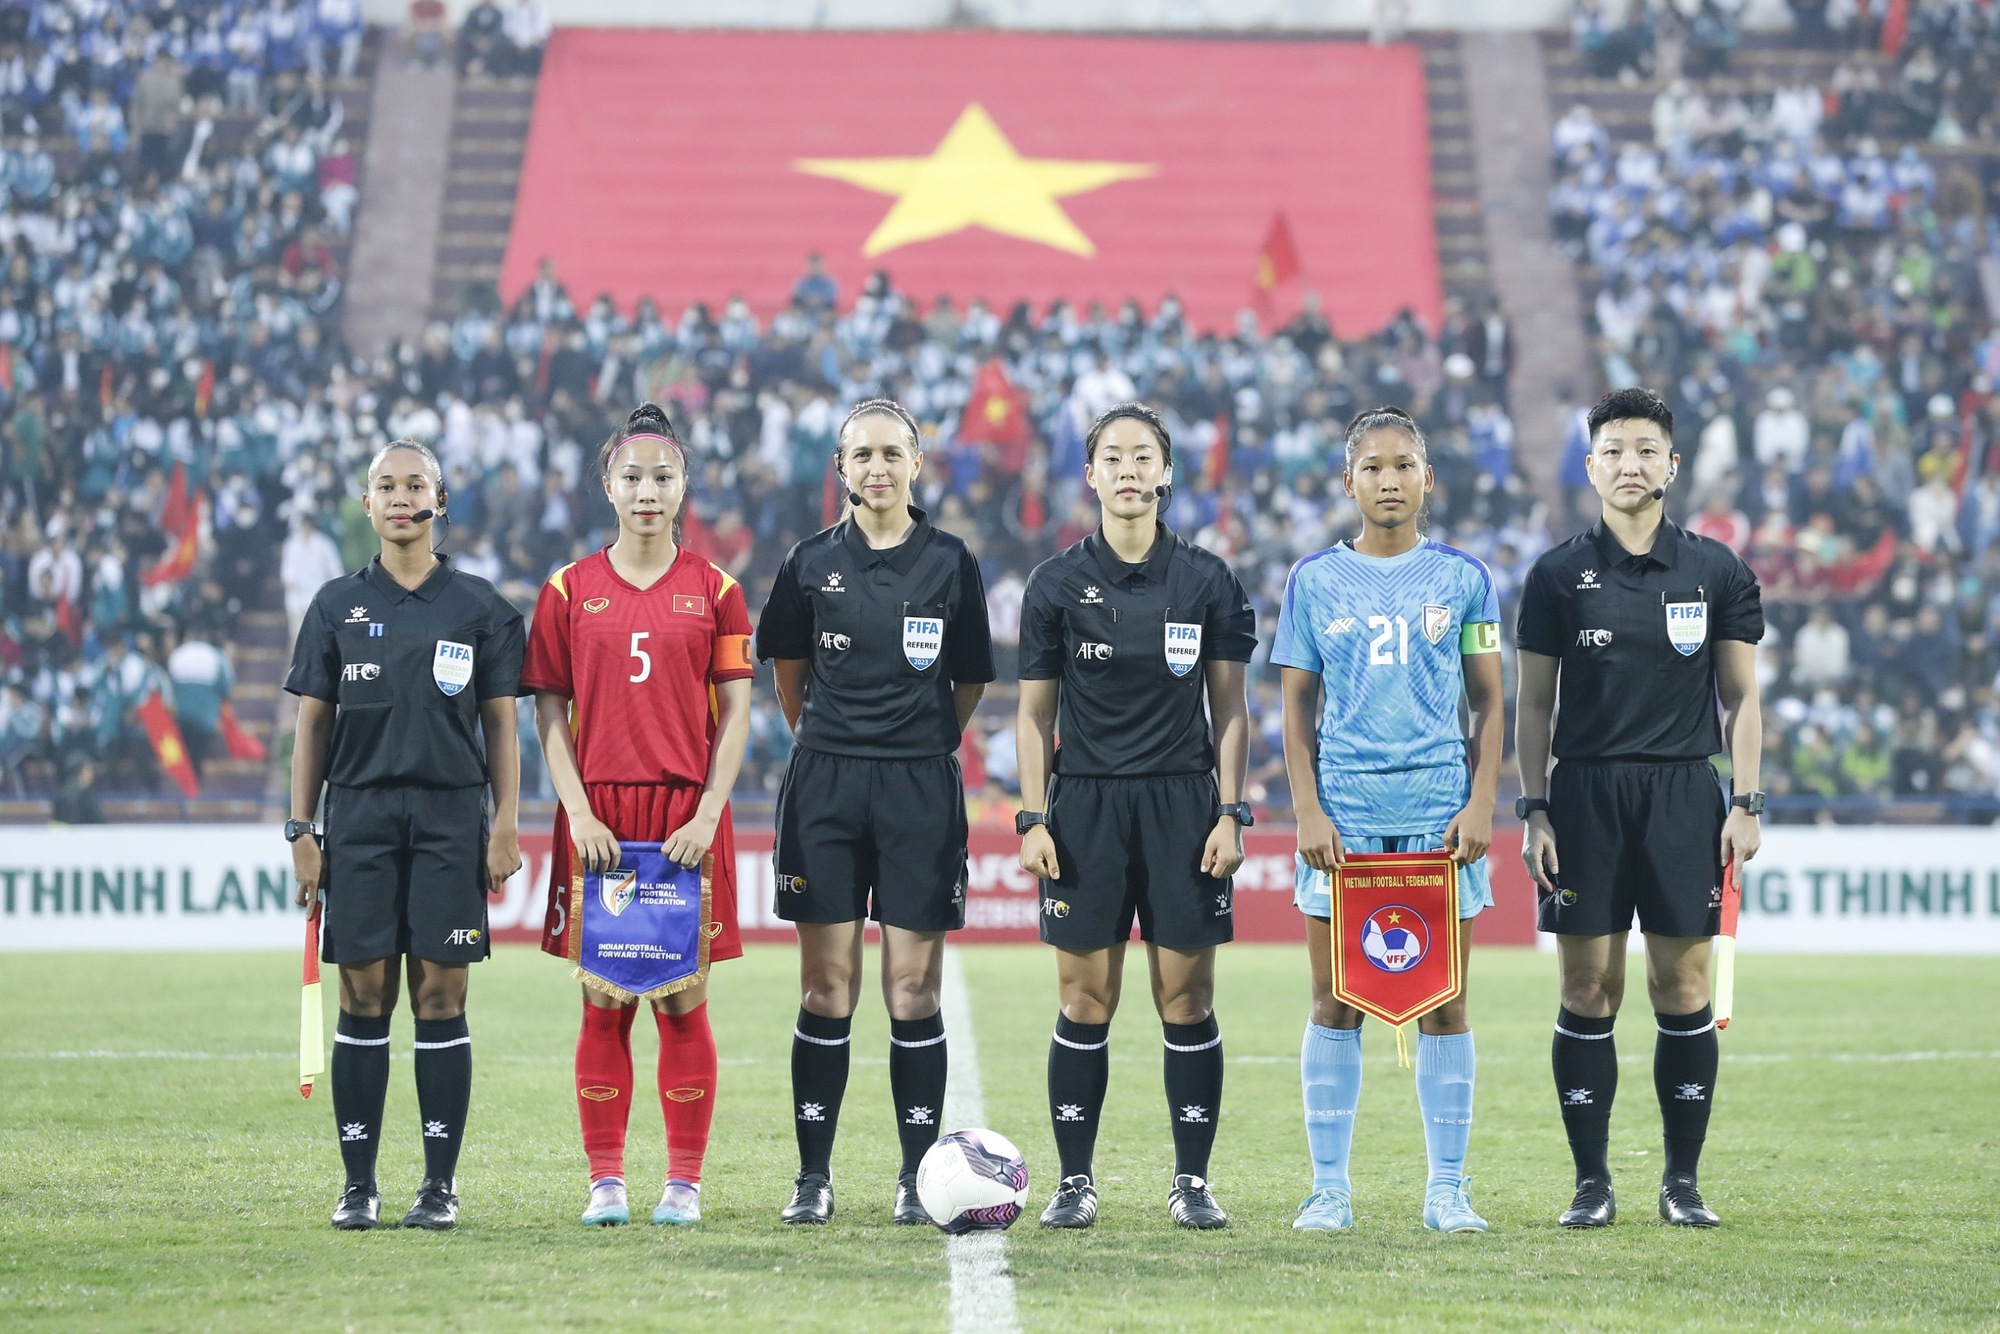 Sắc vóc xinh đẹp, quyến rũ của nữ đội trưởng U.20 Việt Nam - Ảnh 1.